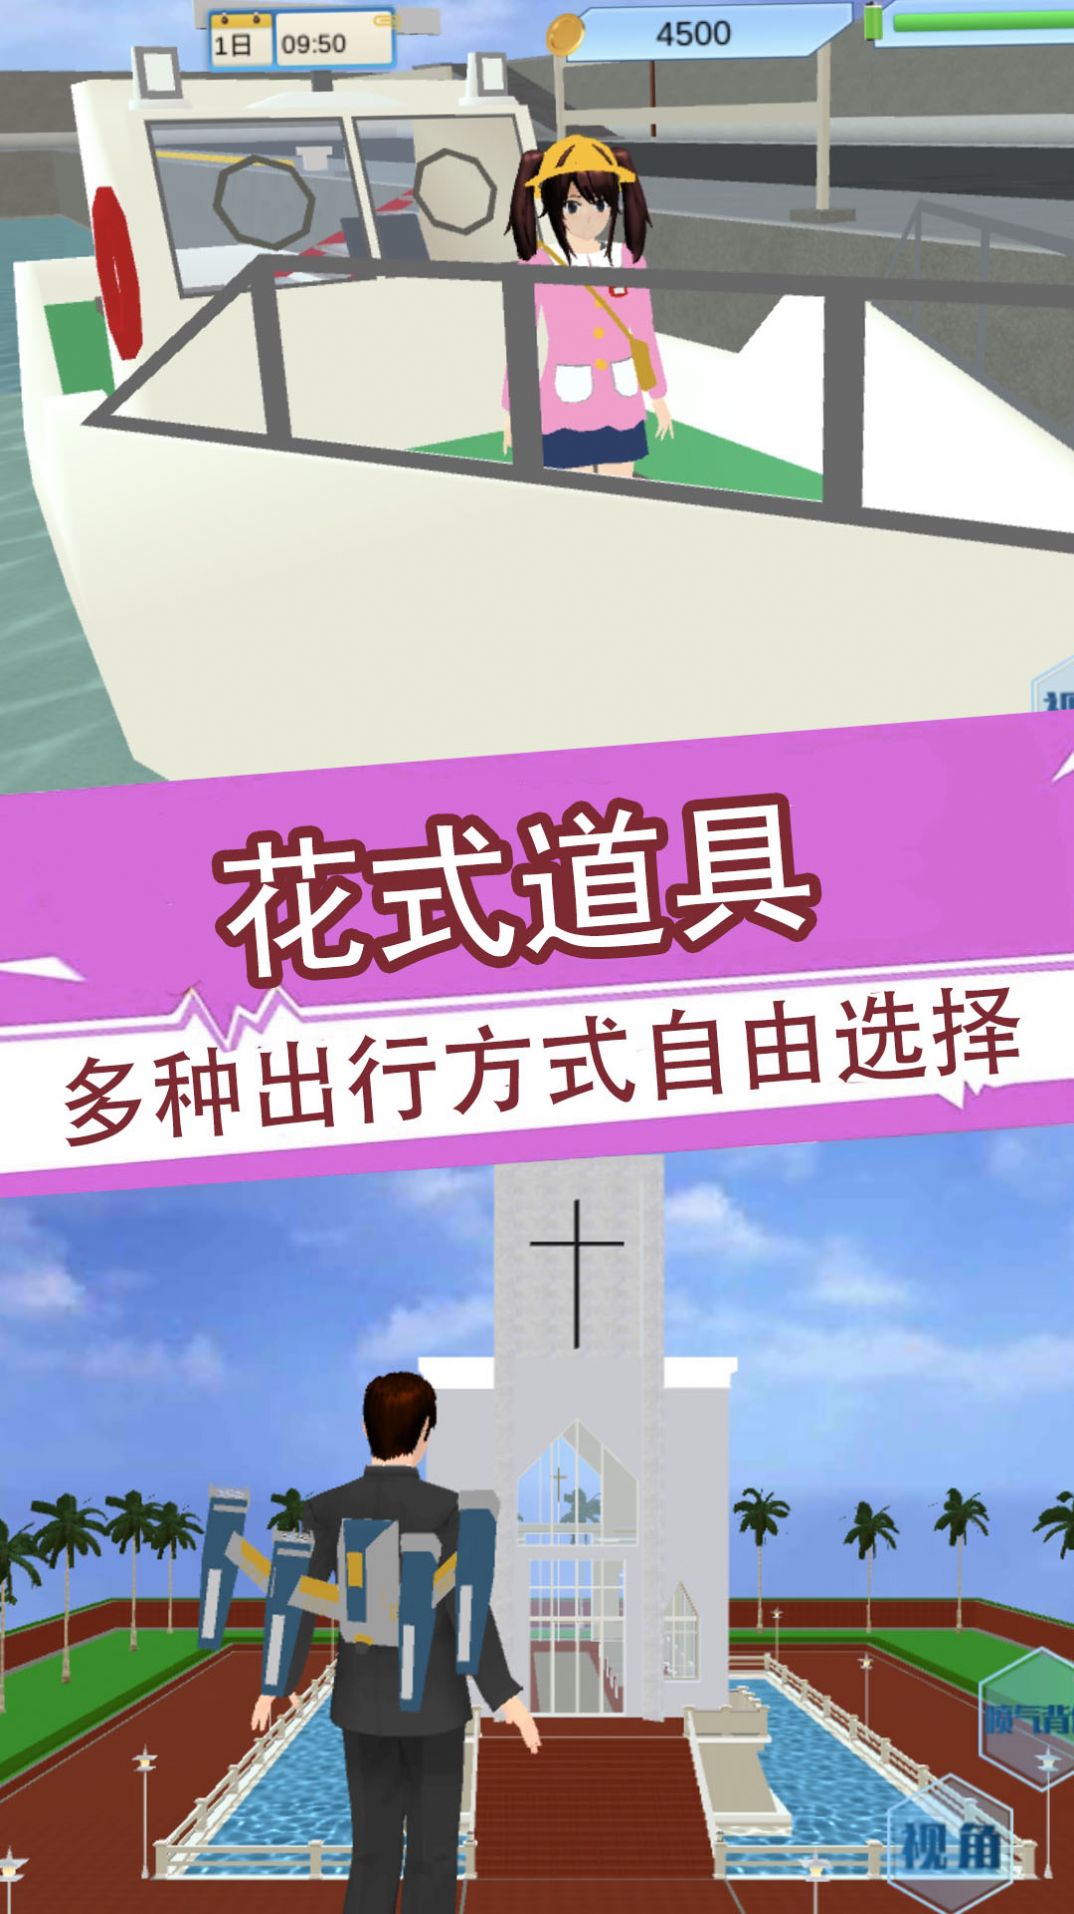 樱花少女3D模拟器下载安装下载,樱花少女3D模拟器游戏中文版下载安装 v1.1